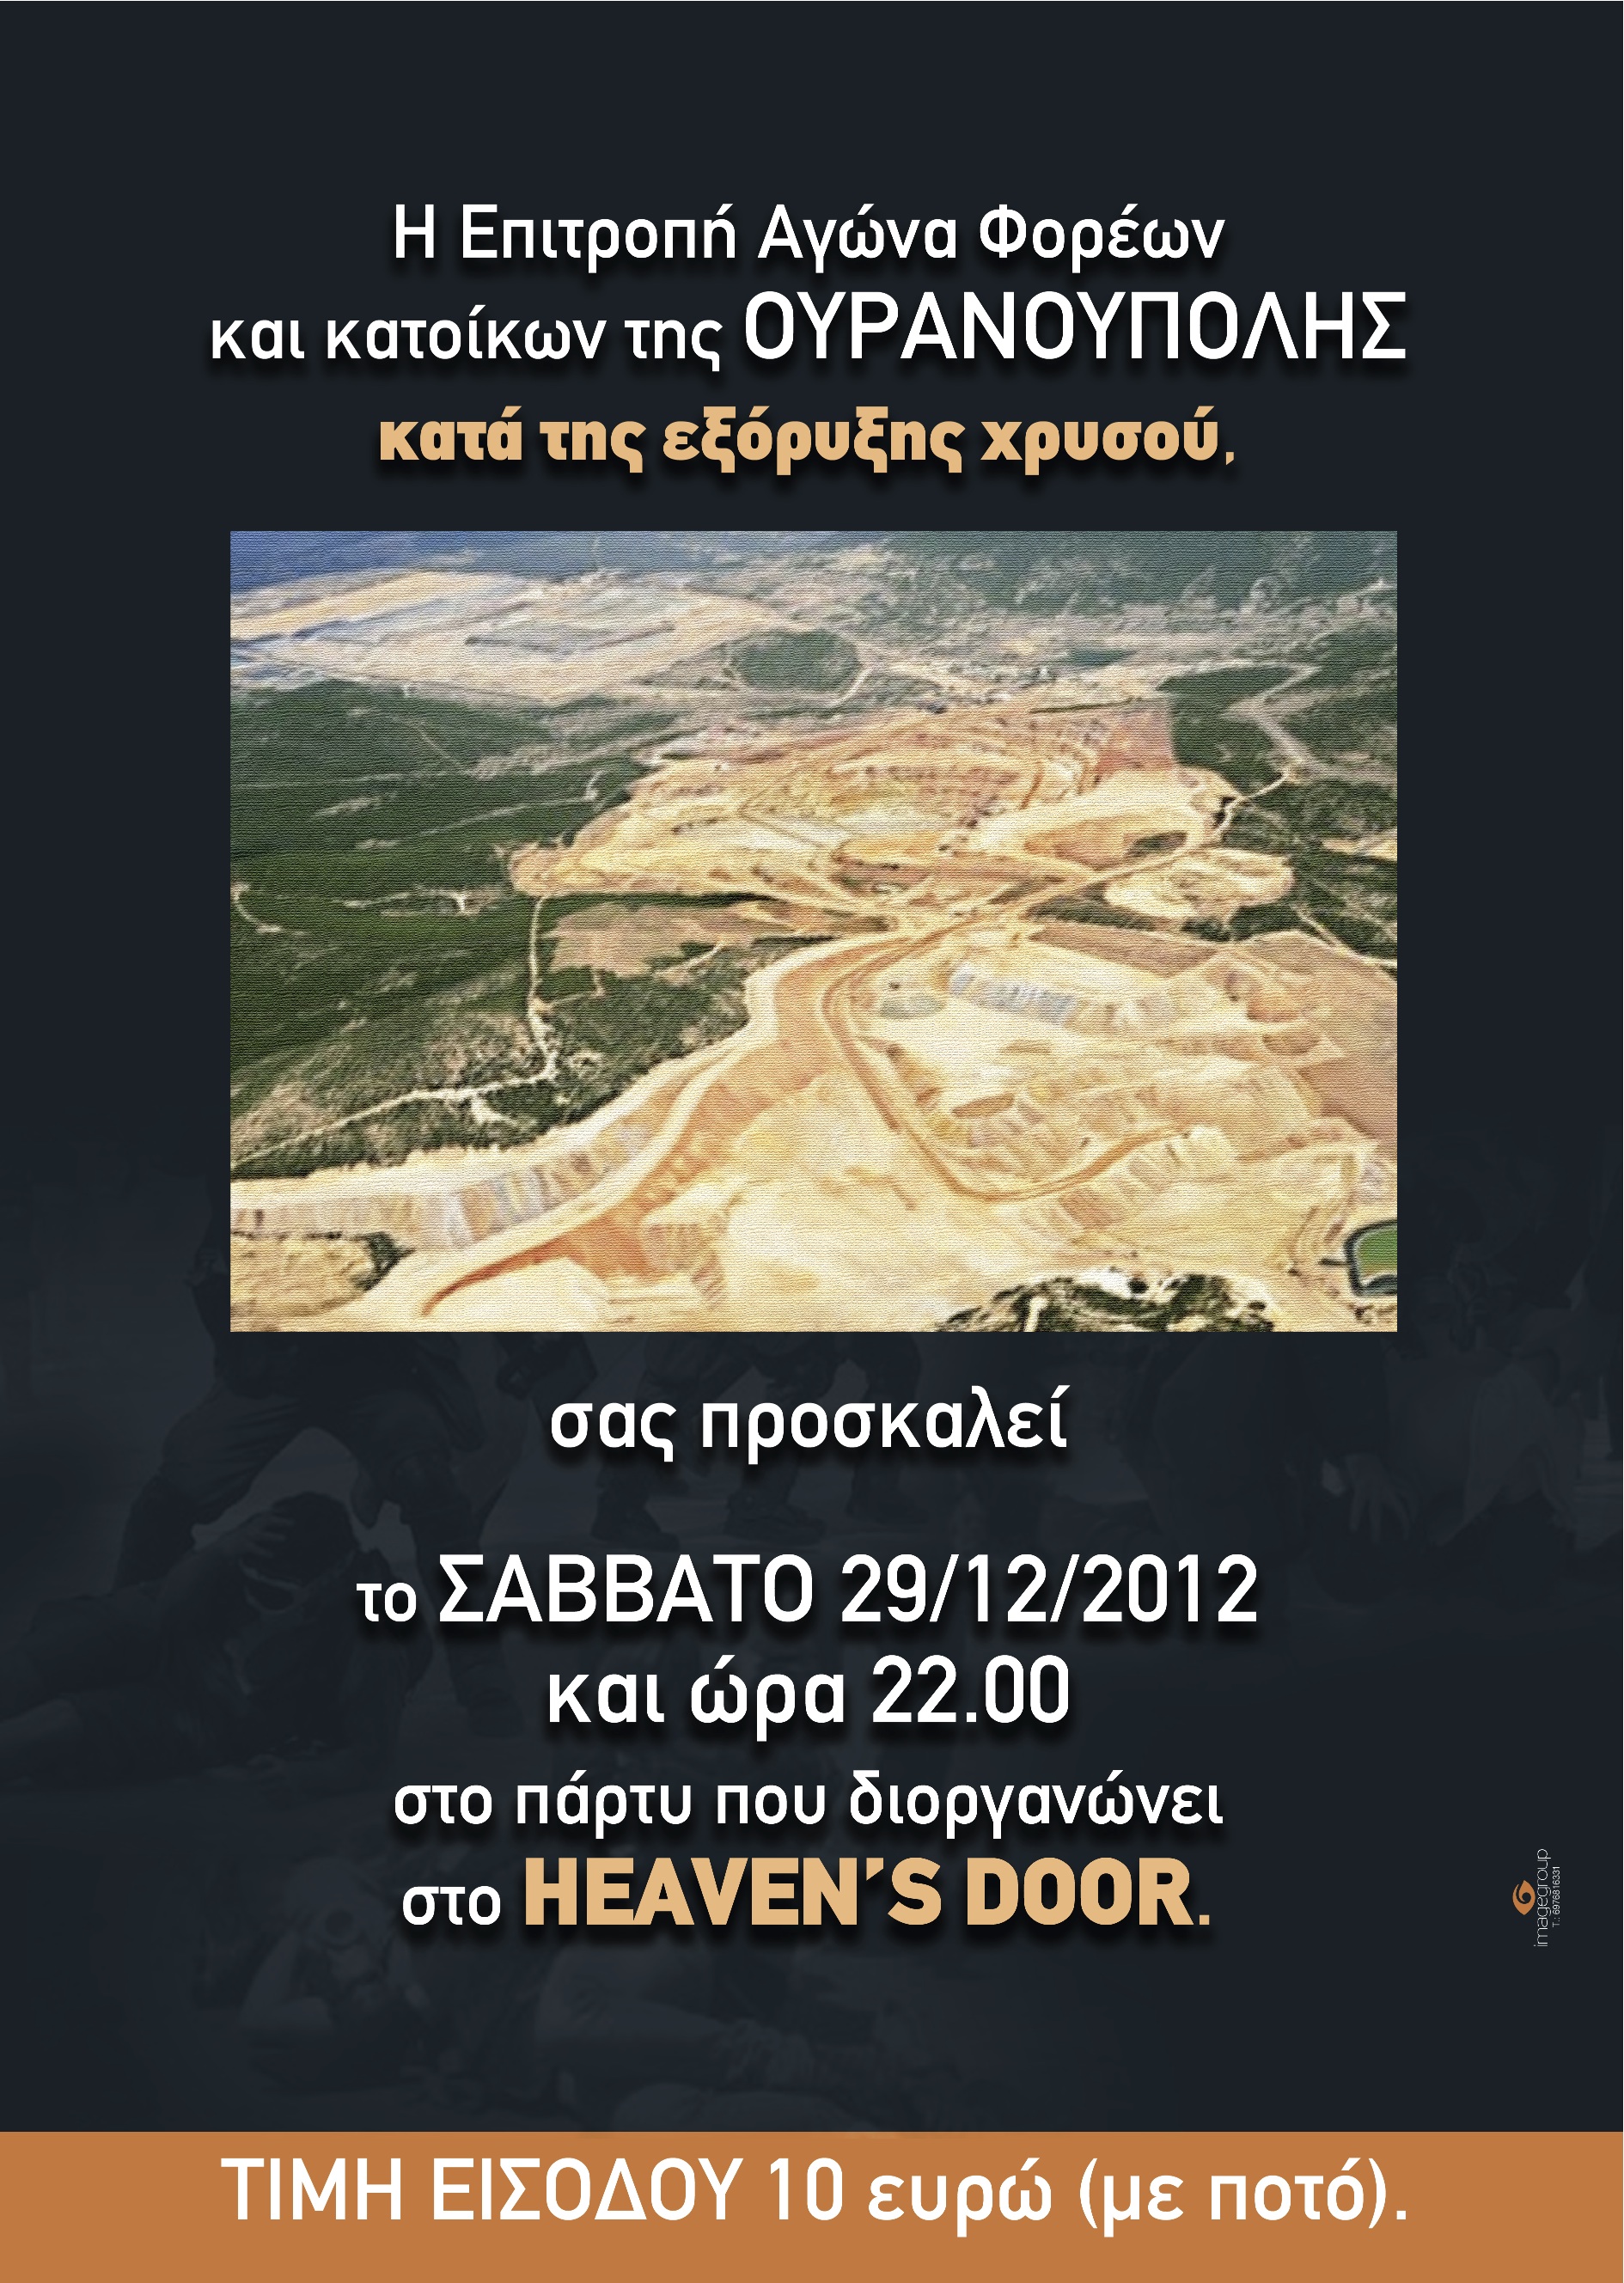 Πάρτυ στην Ουρανούπολη κατά της εξόρυξης χρυσού!